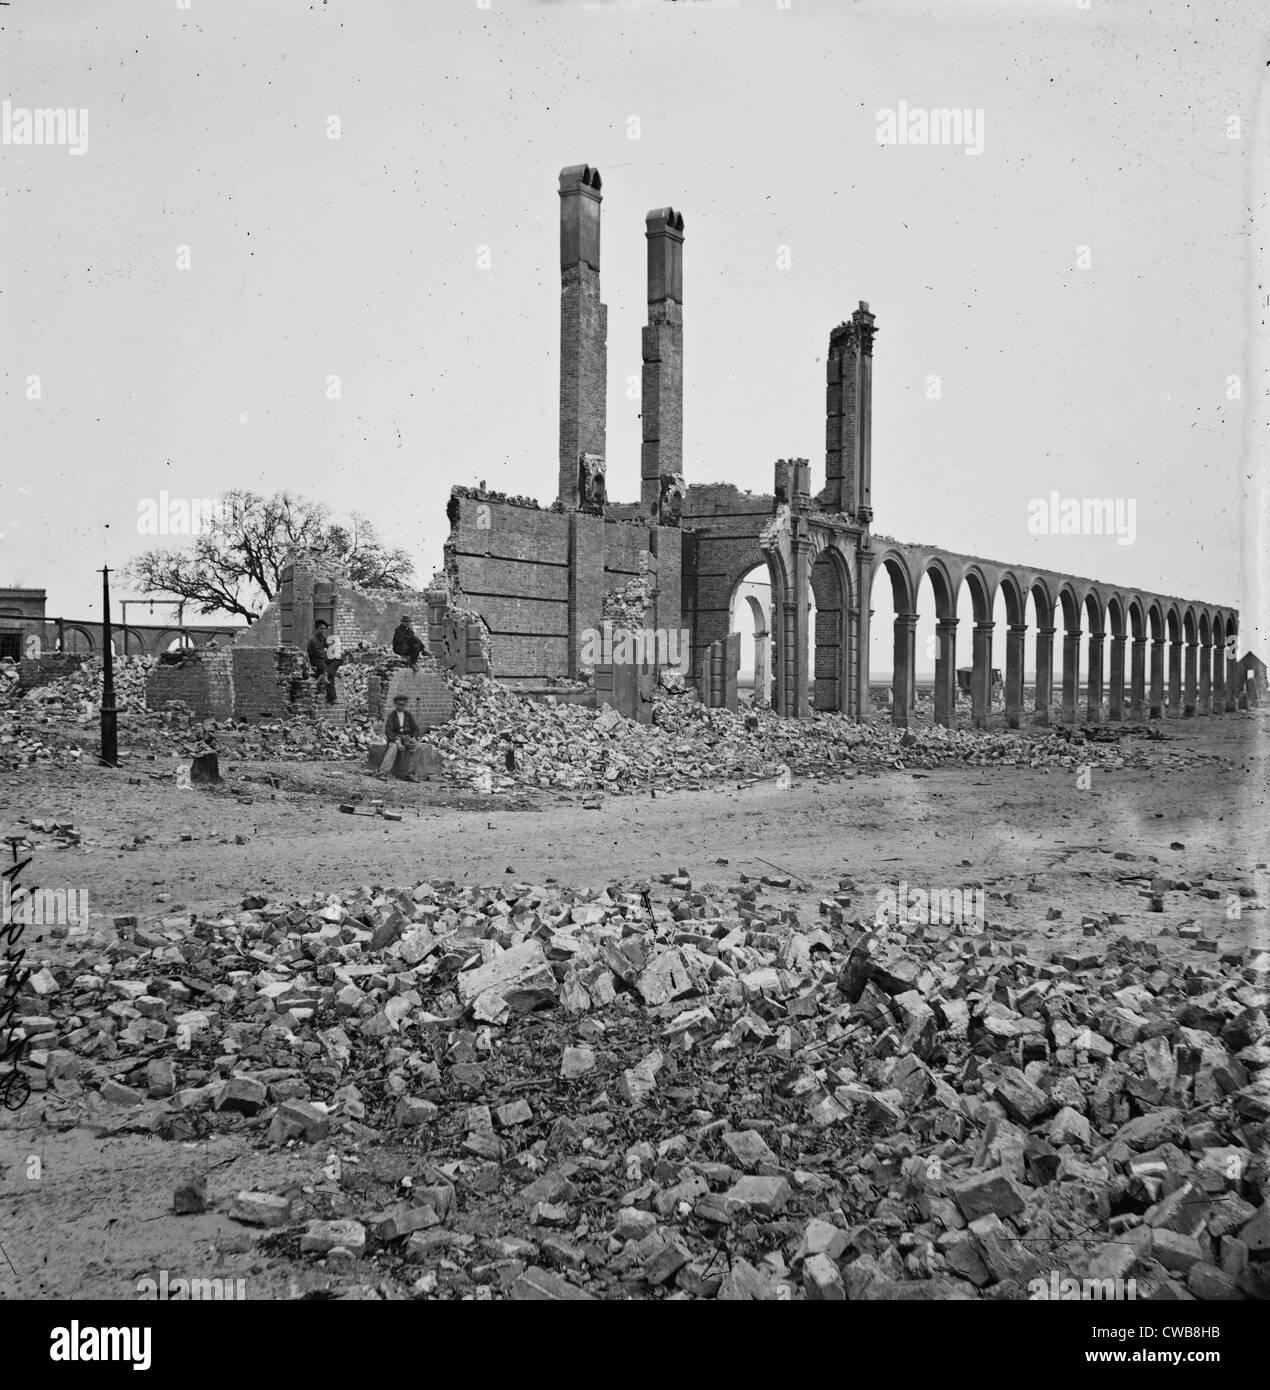 The Civil War. Charleston, South Carolina. Ruins of North Eastern Railroad depot, 1865 Stock Photo